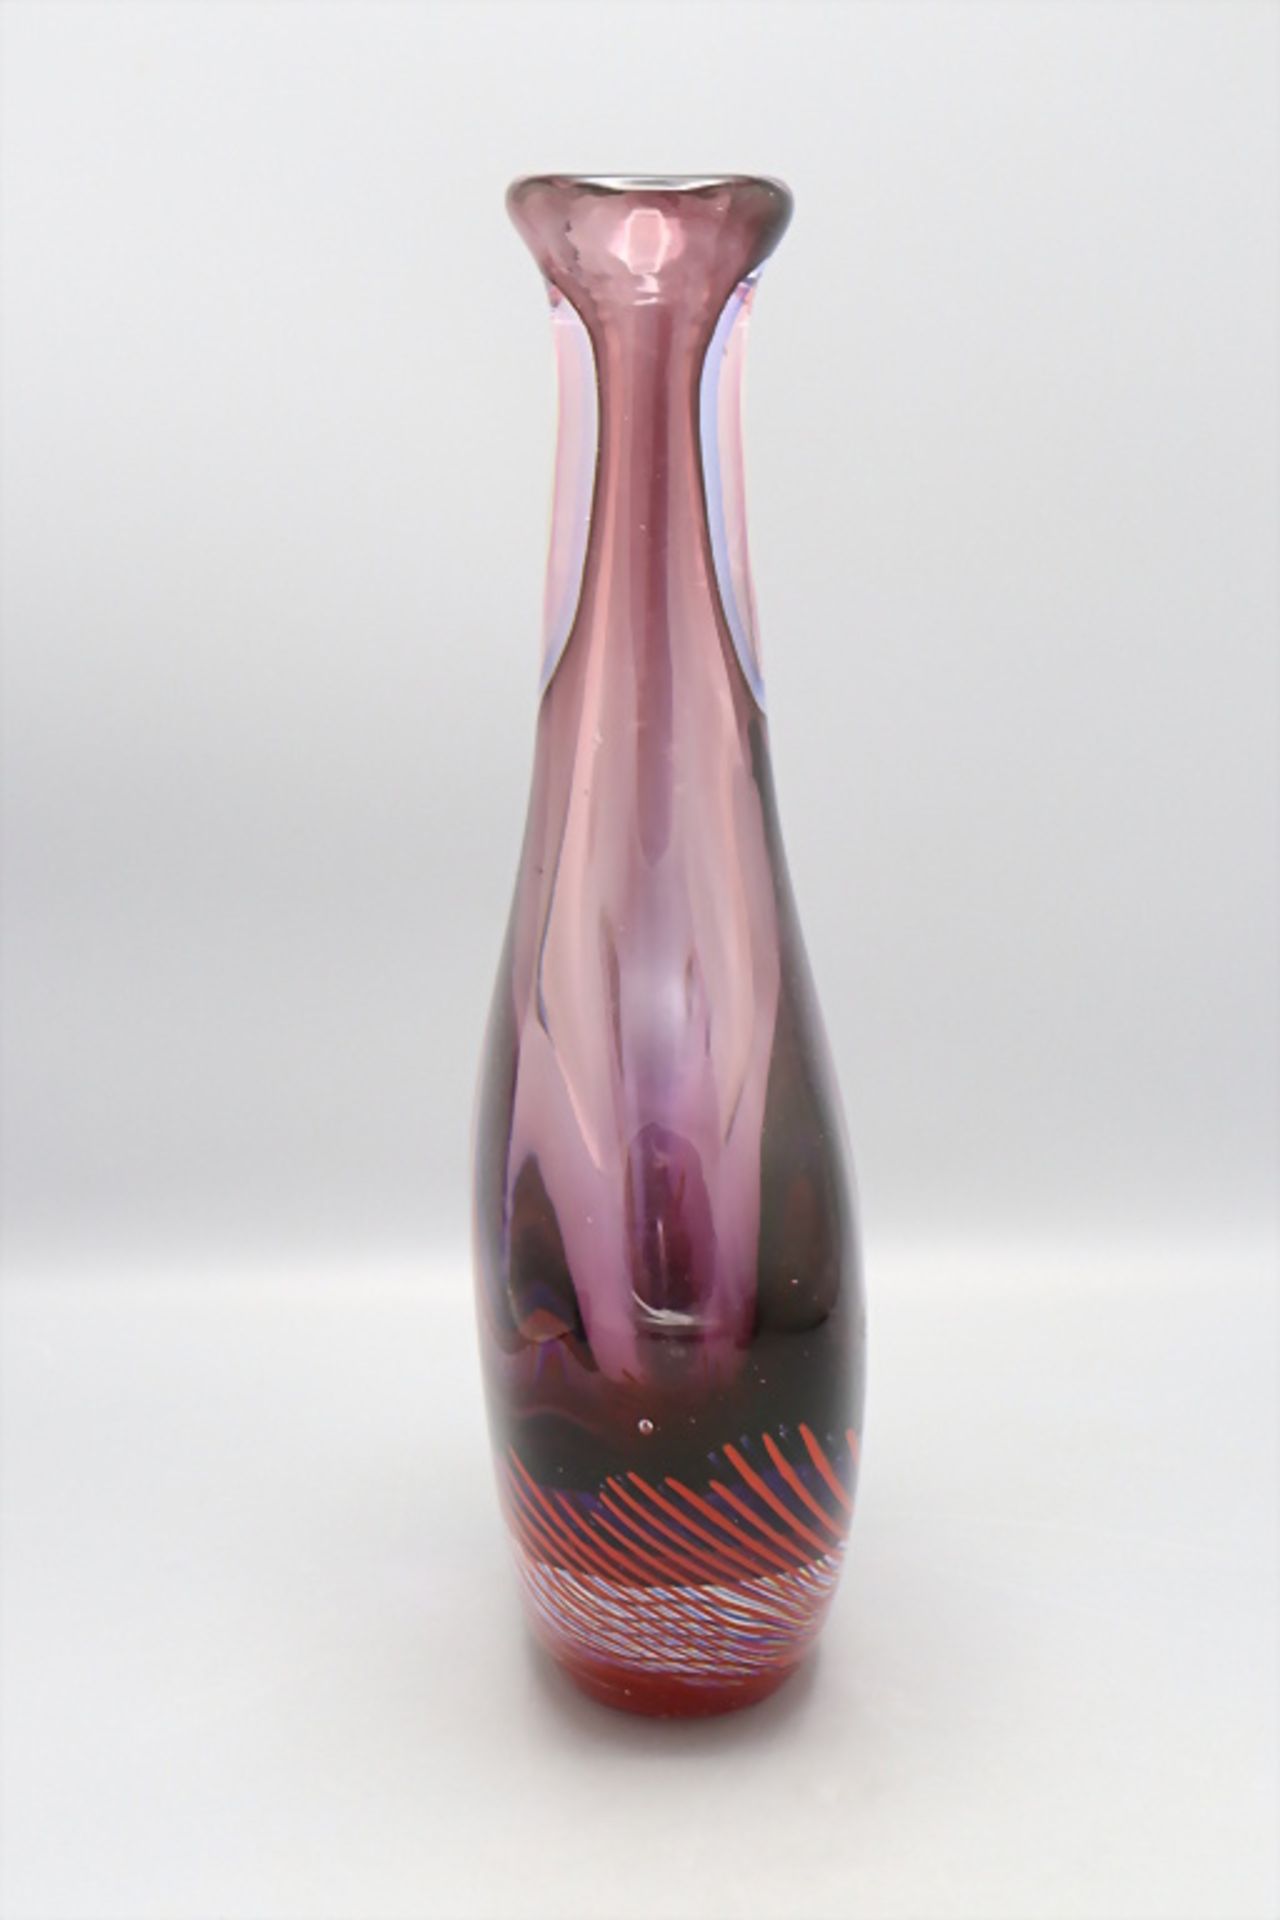 Glasziervase / A decorative glass vase 'Sommerso', Flavio Poli, Murano, 1960er Jahre - Bild 4 aus 6